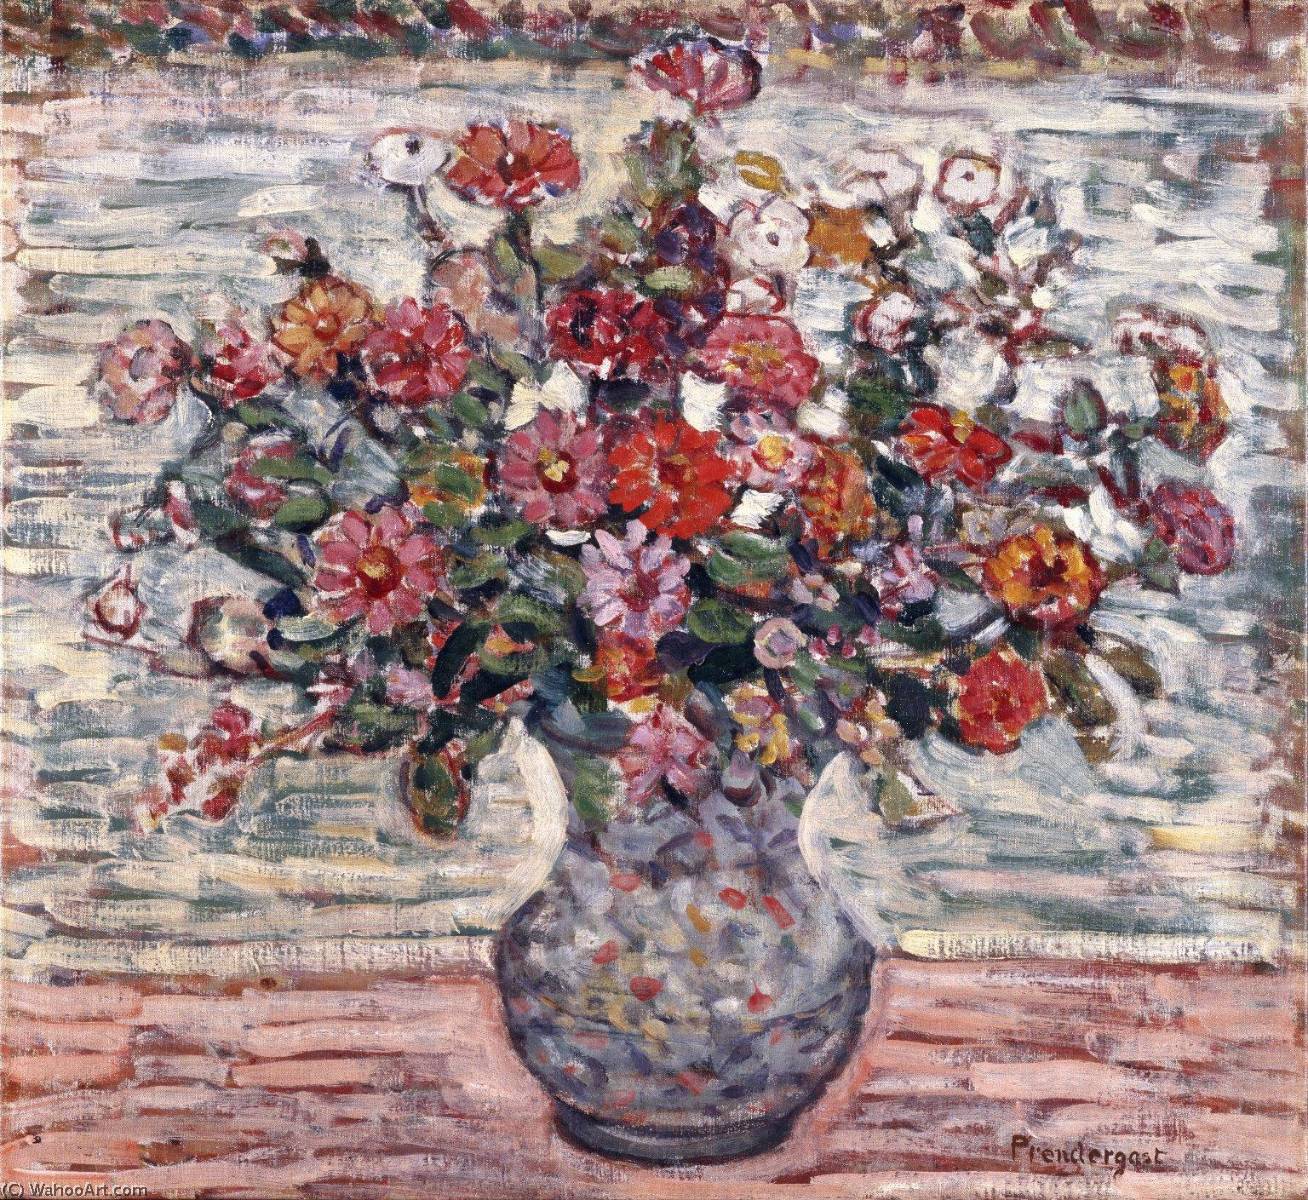 WikiOO.org - Enciklopedija dailės - Tapyba, meno kuriniai Maurice Brazil Prendergast - Flowers in a Vase